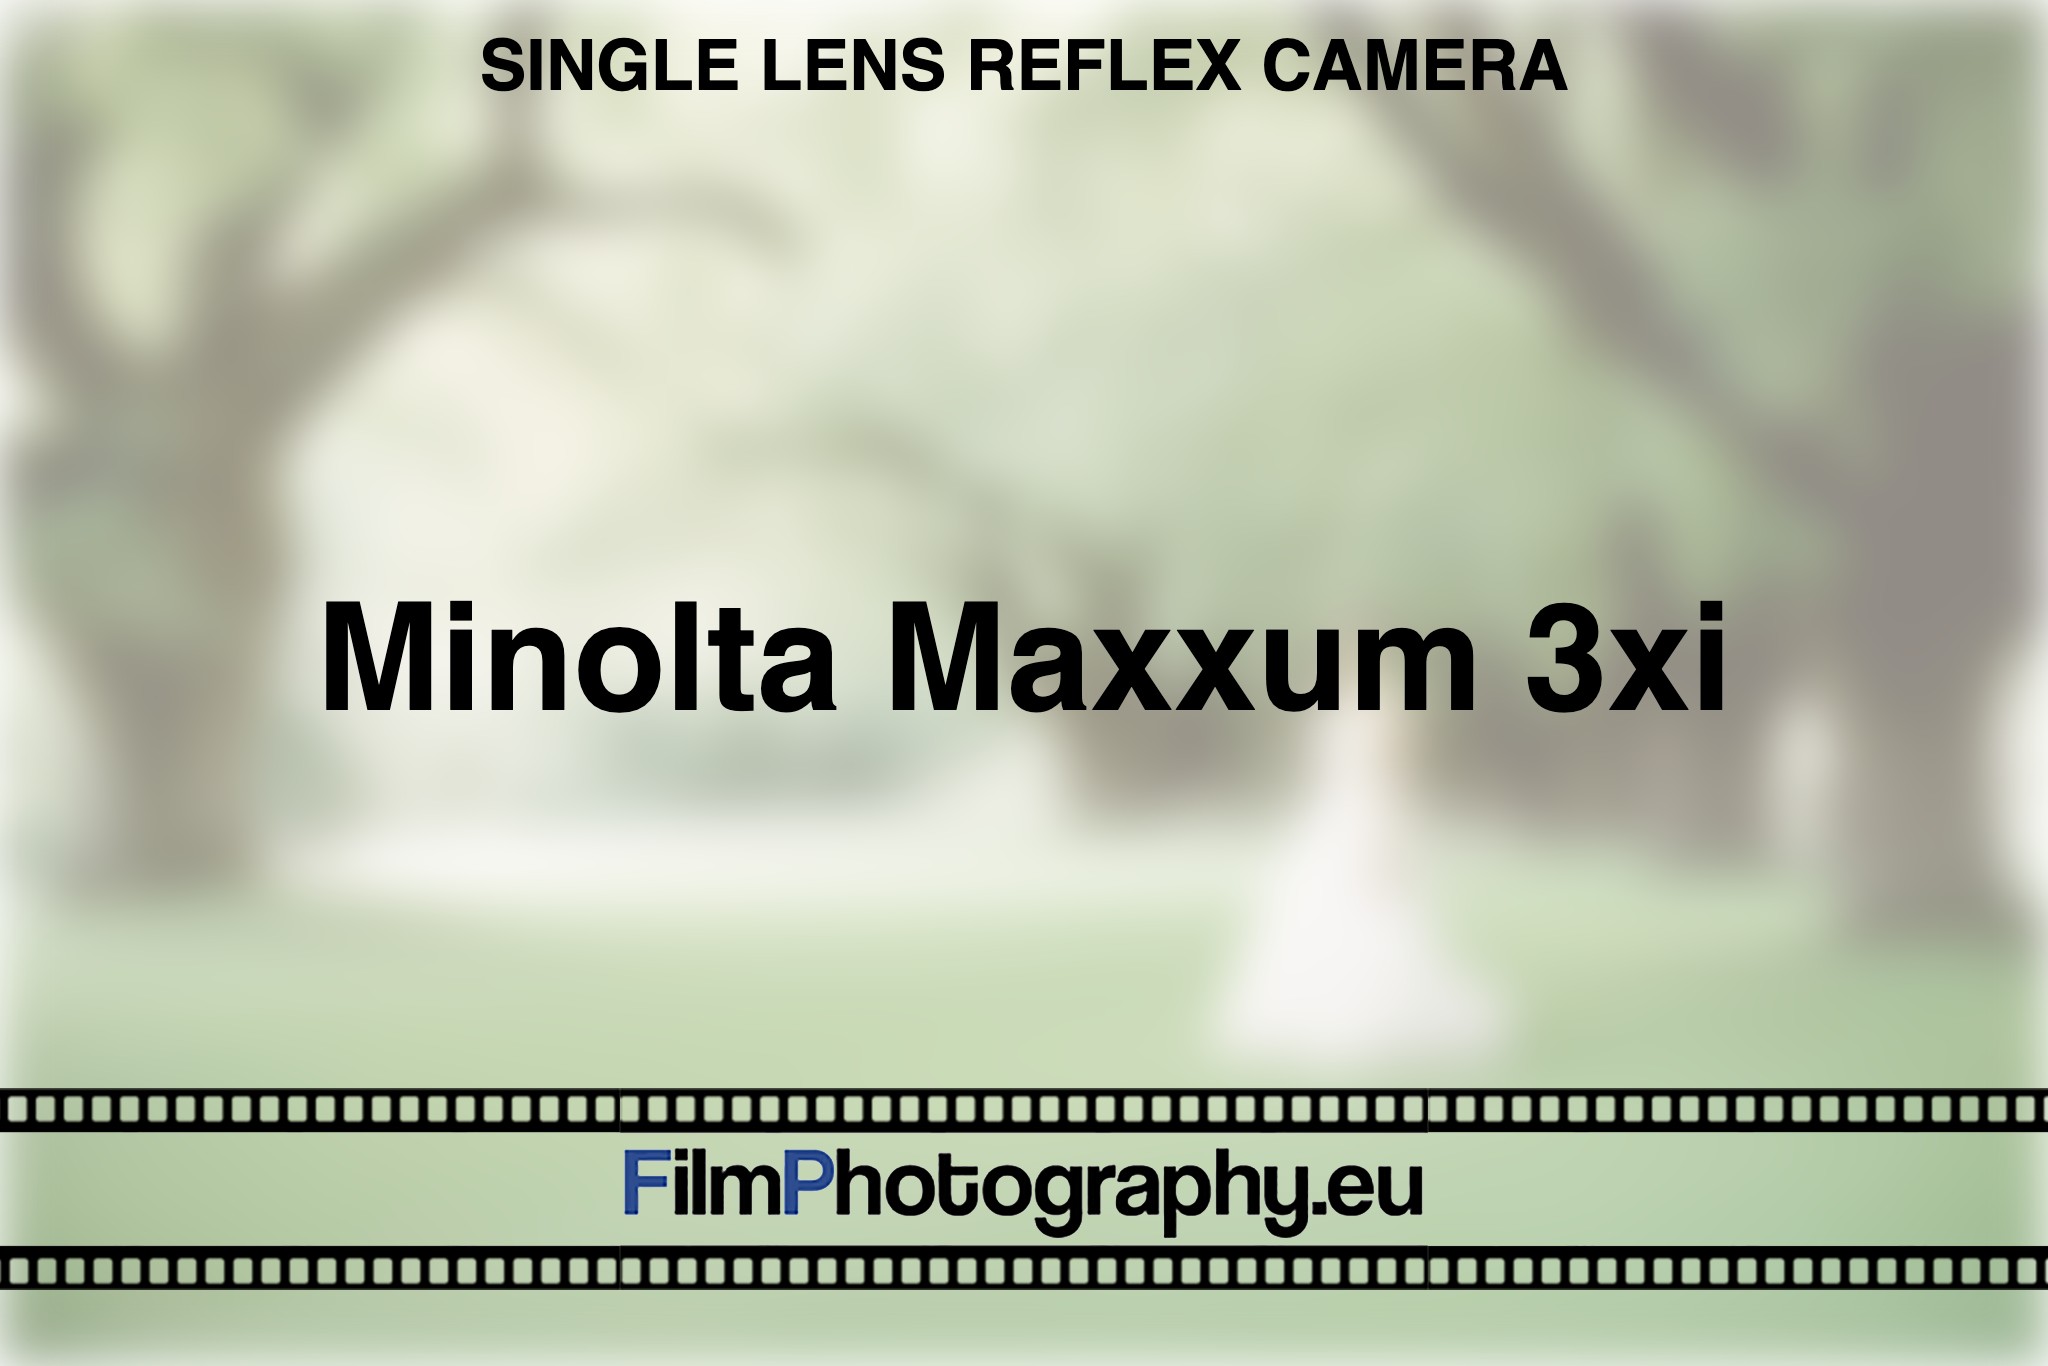 minolta-maxxum-3xi-single-lens-reflex-camera-bnv